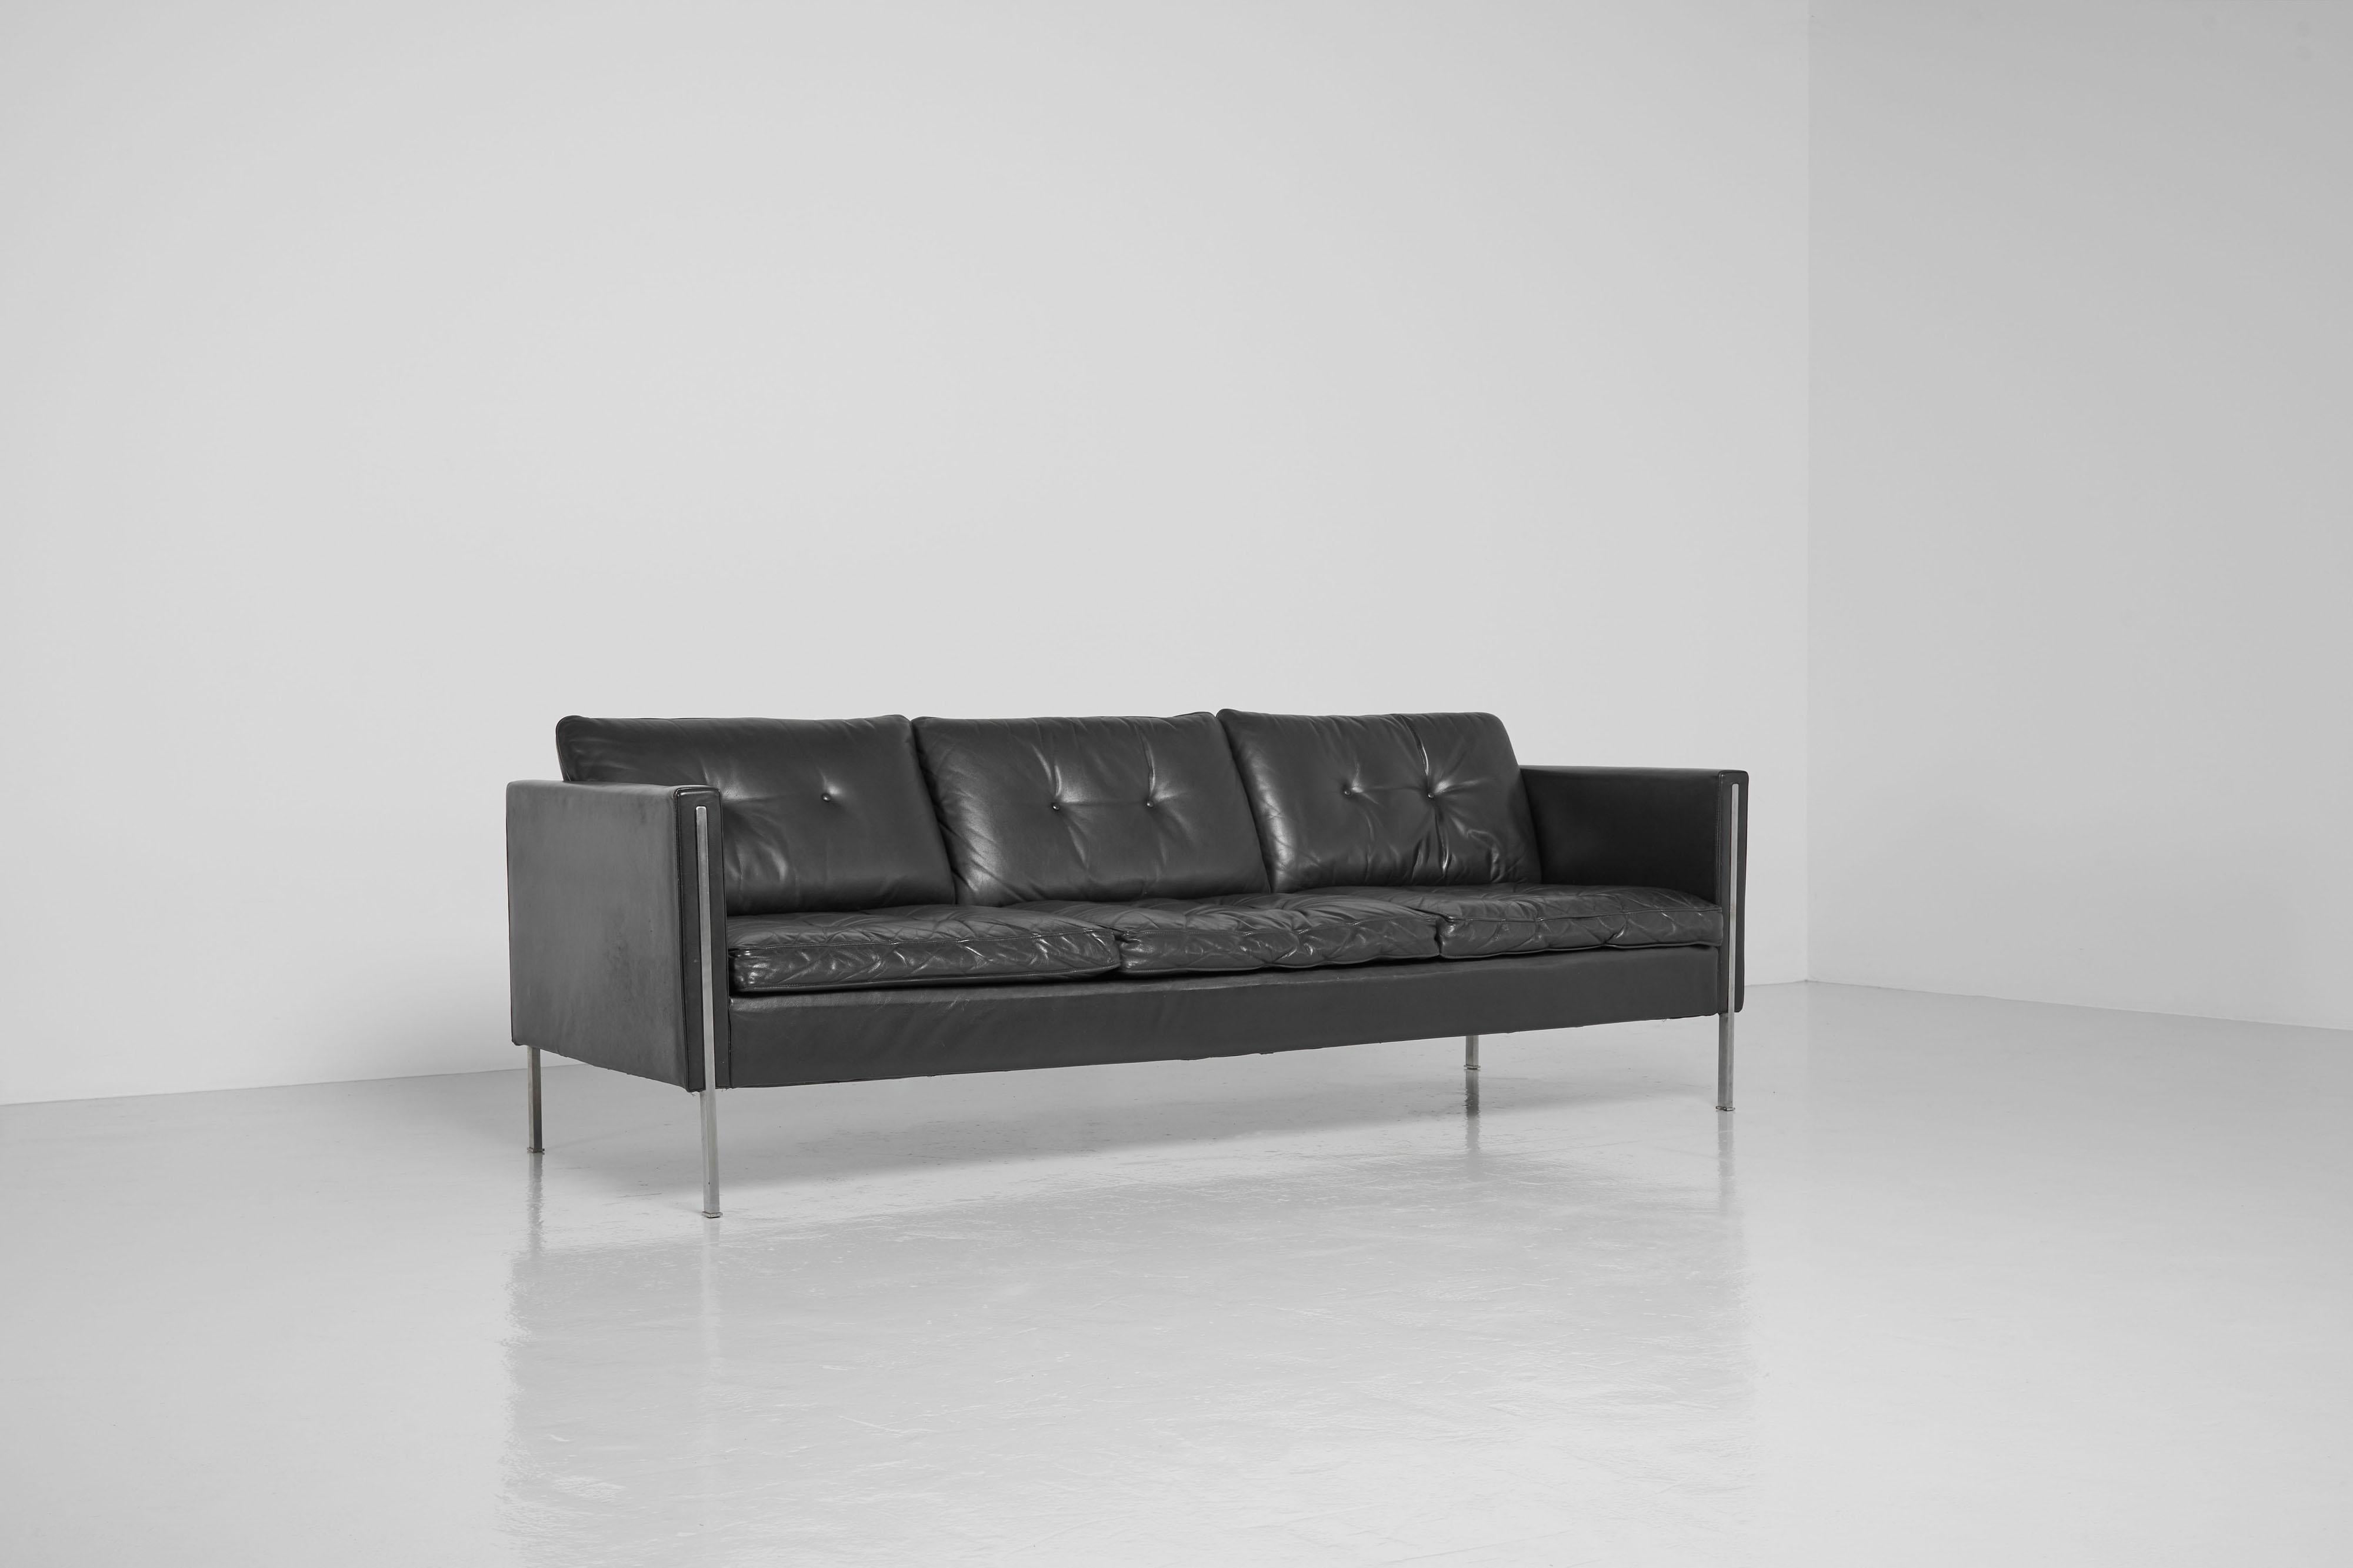 Schönes minimalistisches Sofa Modell 442/3, entworfen von Pierre Paulin und hergestellt von Artifort, Niederlande 1962. Es handelt sich um ein dreisitziges Sofa Modell 442/3, das größte dieser Serie, ein Sofa aus hochwertigem schwarzem Leder und